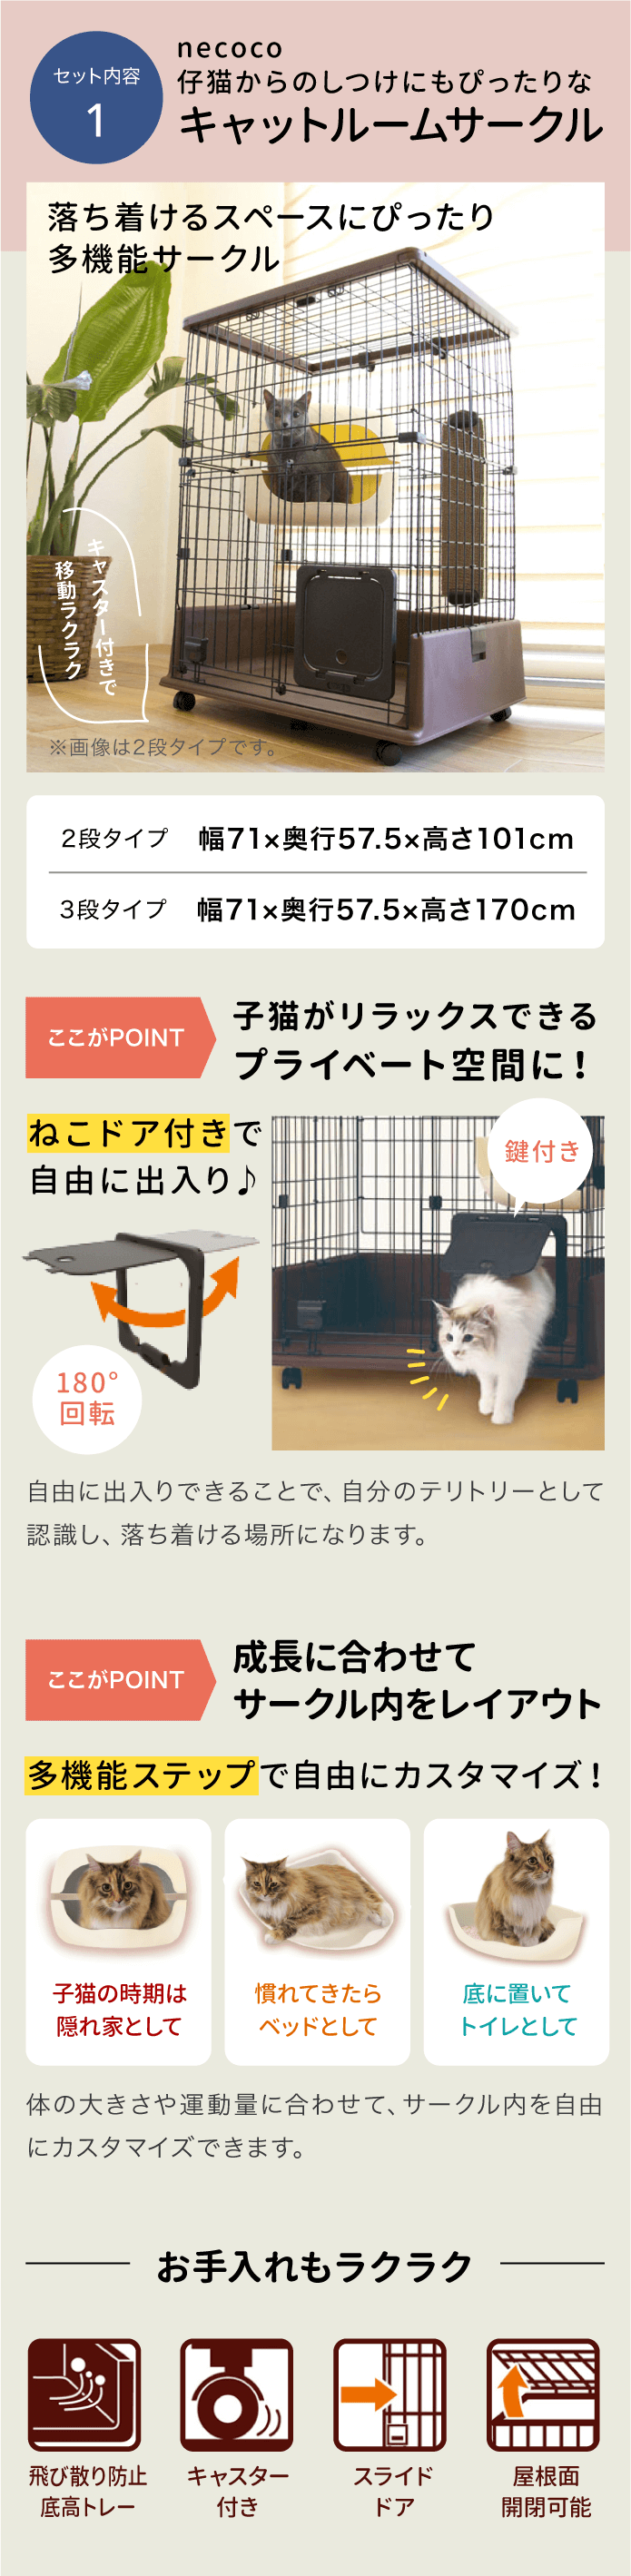 ネコちゃん用 necoco キャットルームサークル スターターセット